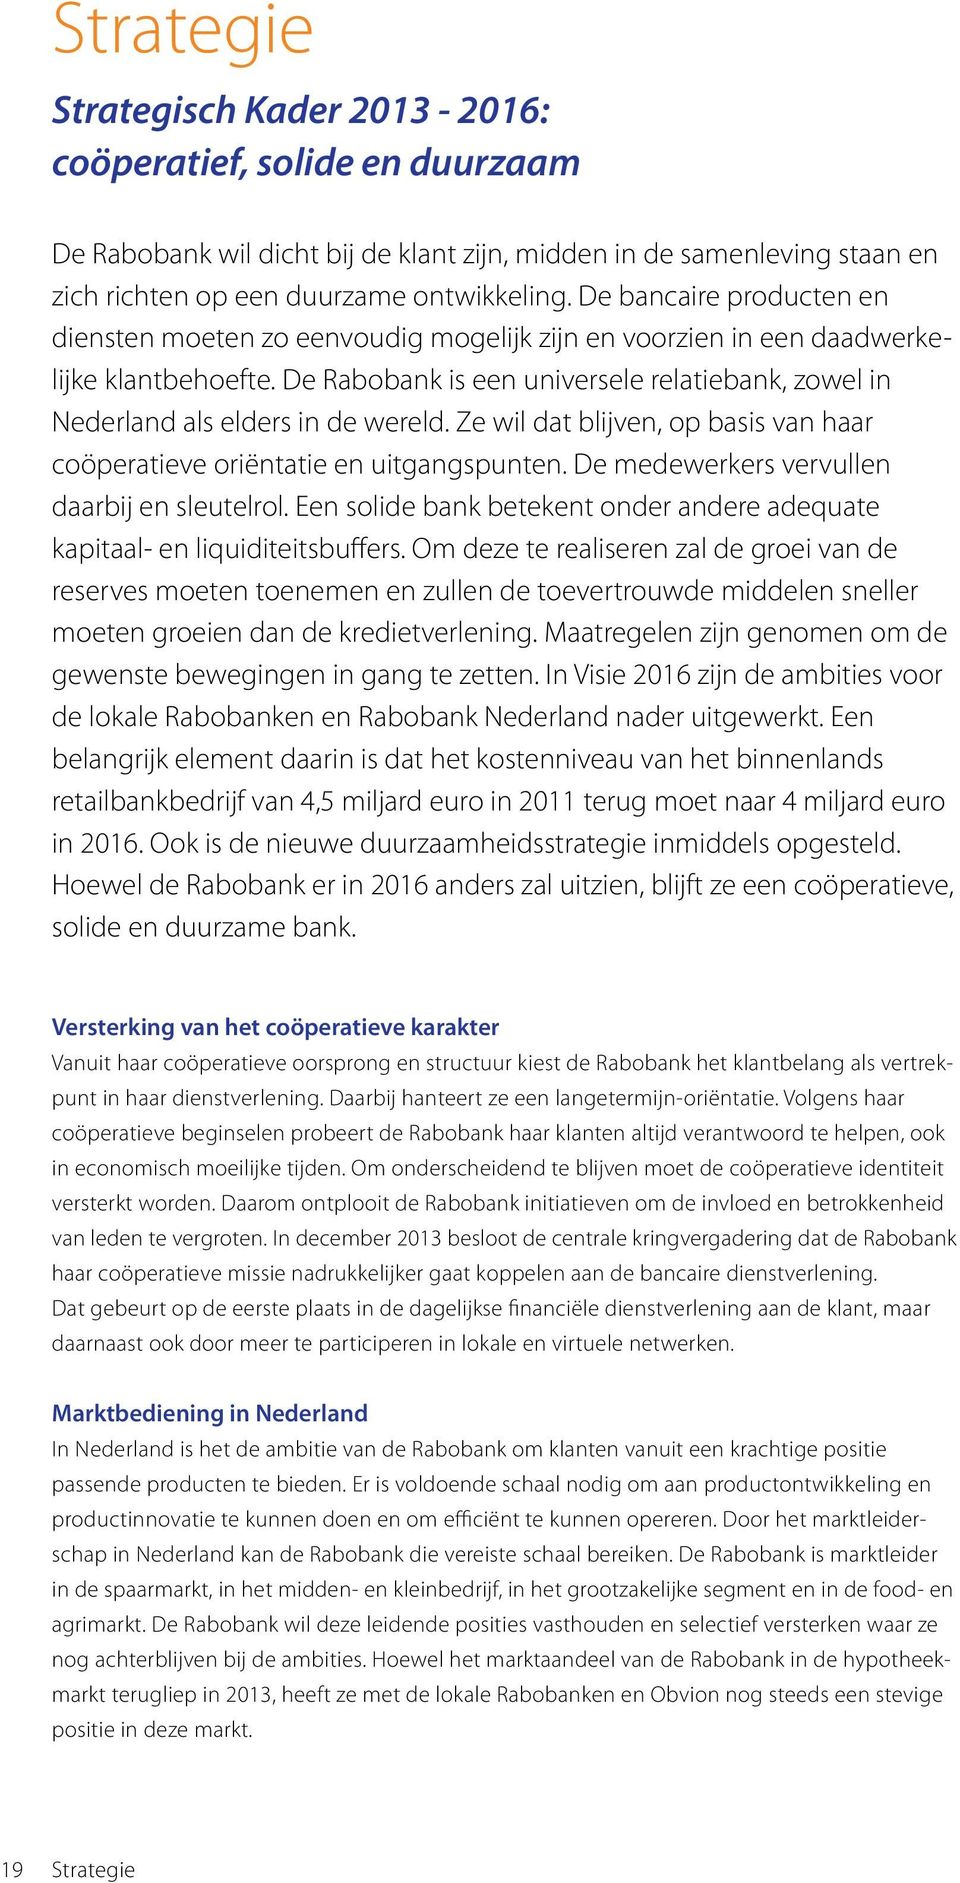 De Rabobank is een universele relatiebank, zowel in Nederland als elders in de wereld. Ze wil dat blijven, op basis van haar coöperatieve oriëntatie en uitgangspunten.